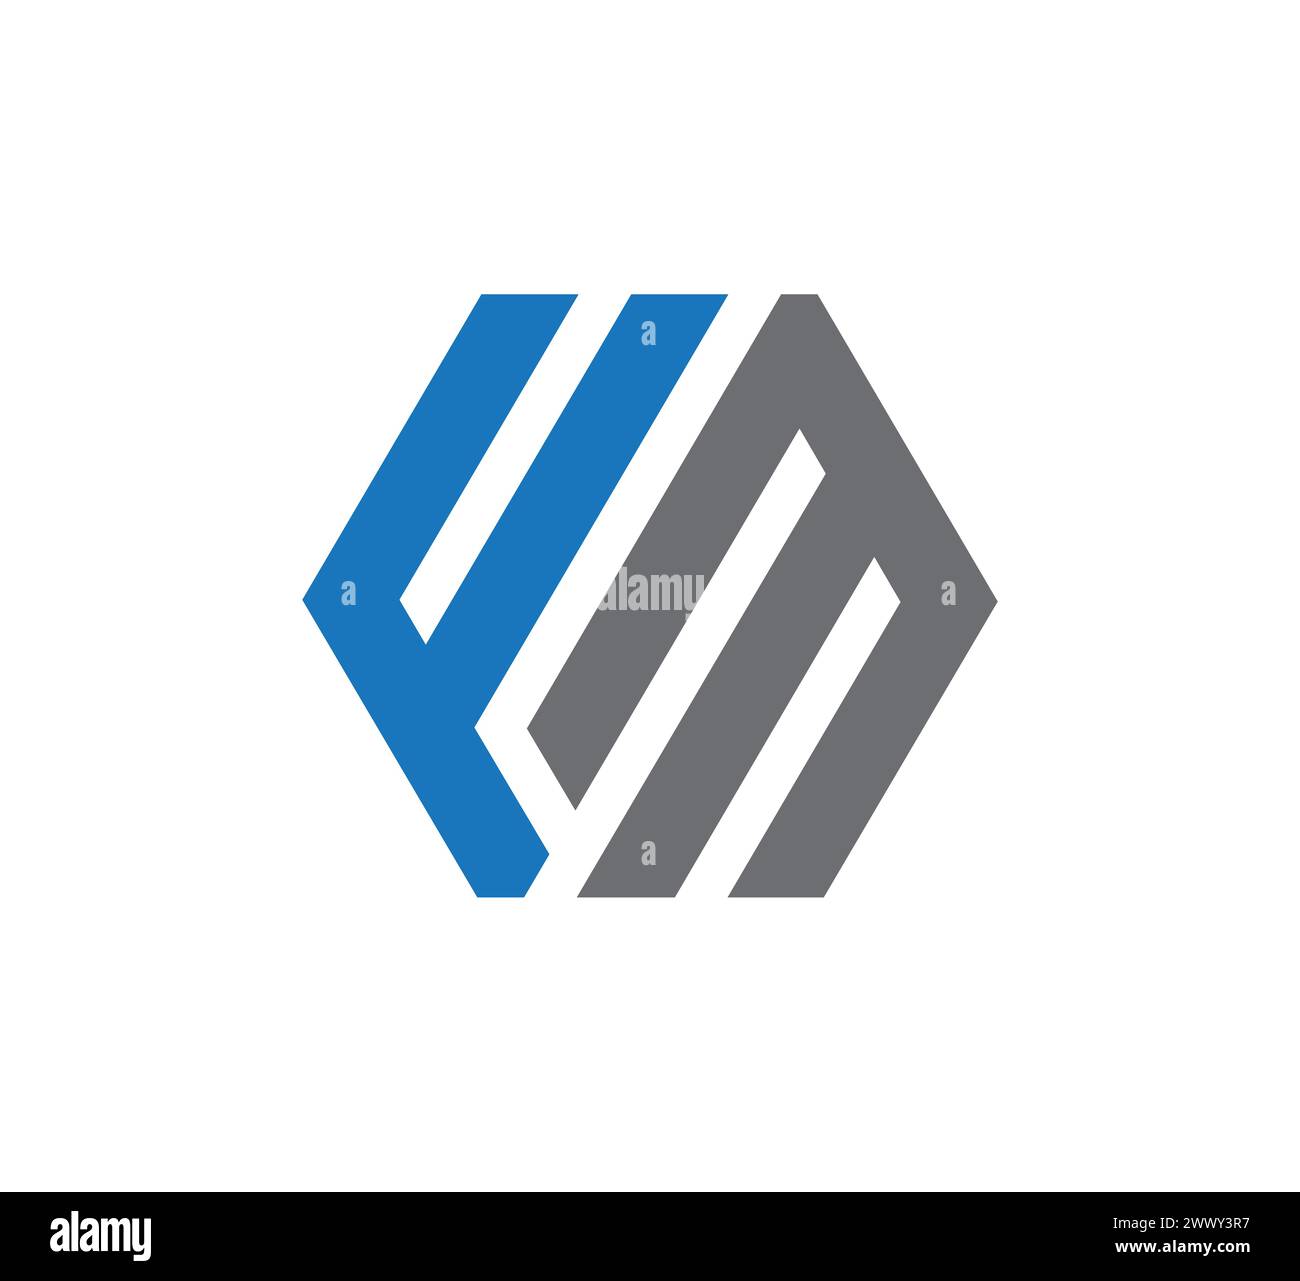 fm letter logo Stock Vector